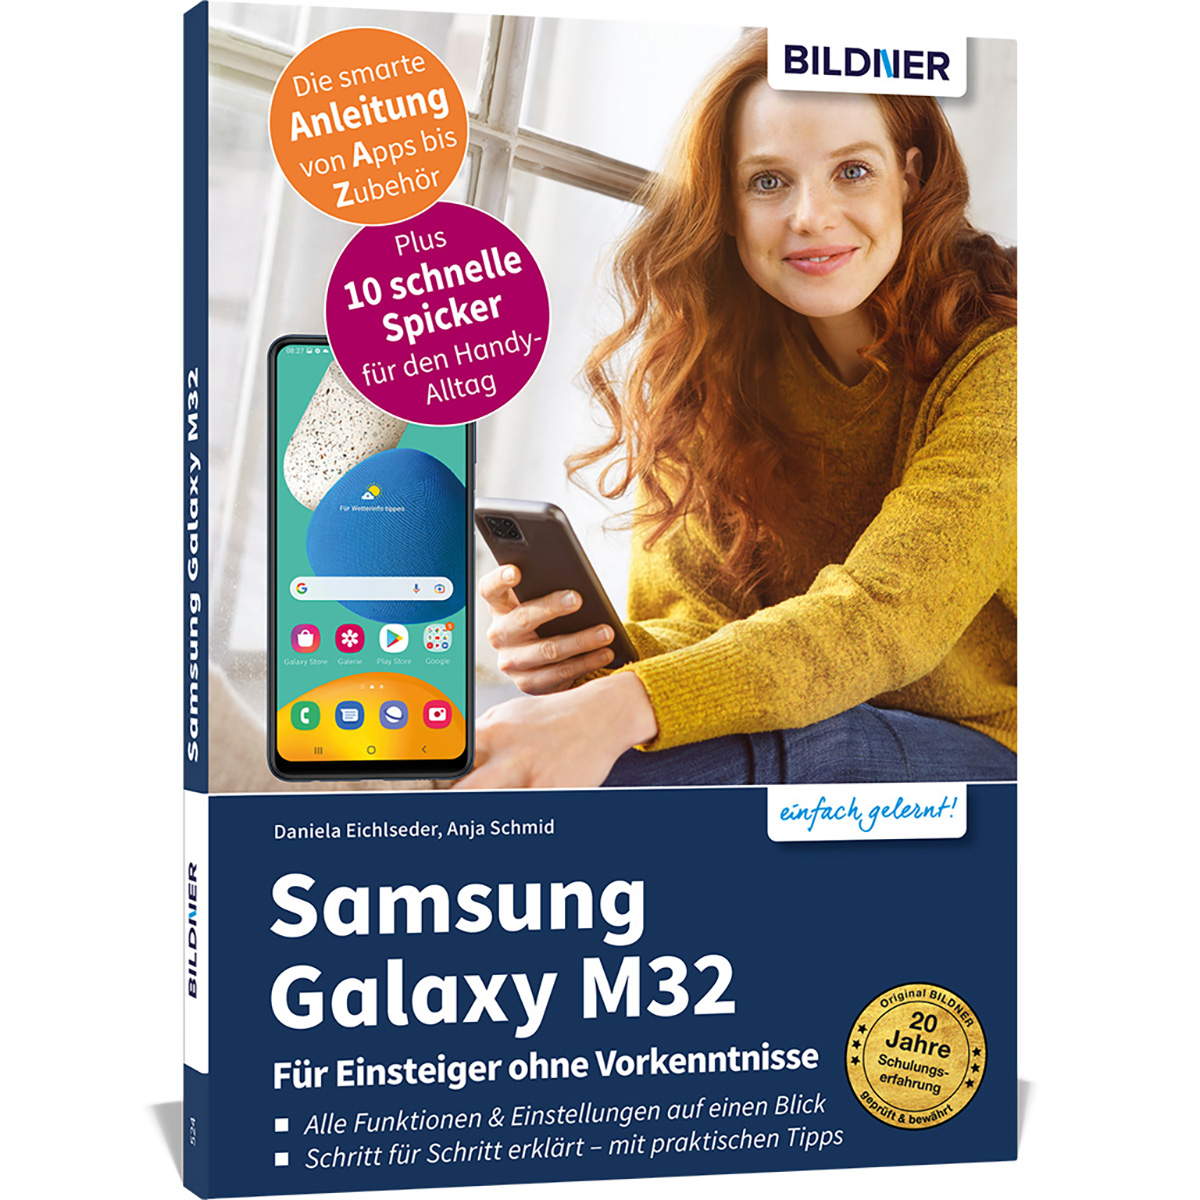 Für Einsteiger Samsung Vorkenntnisse - M32 ohne Galaxy